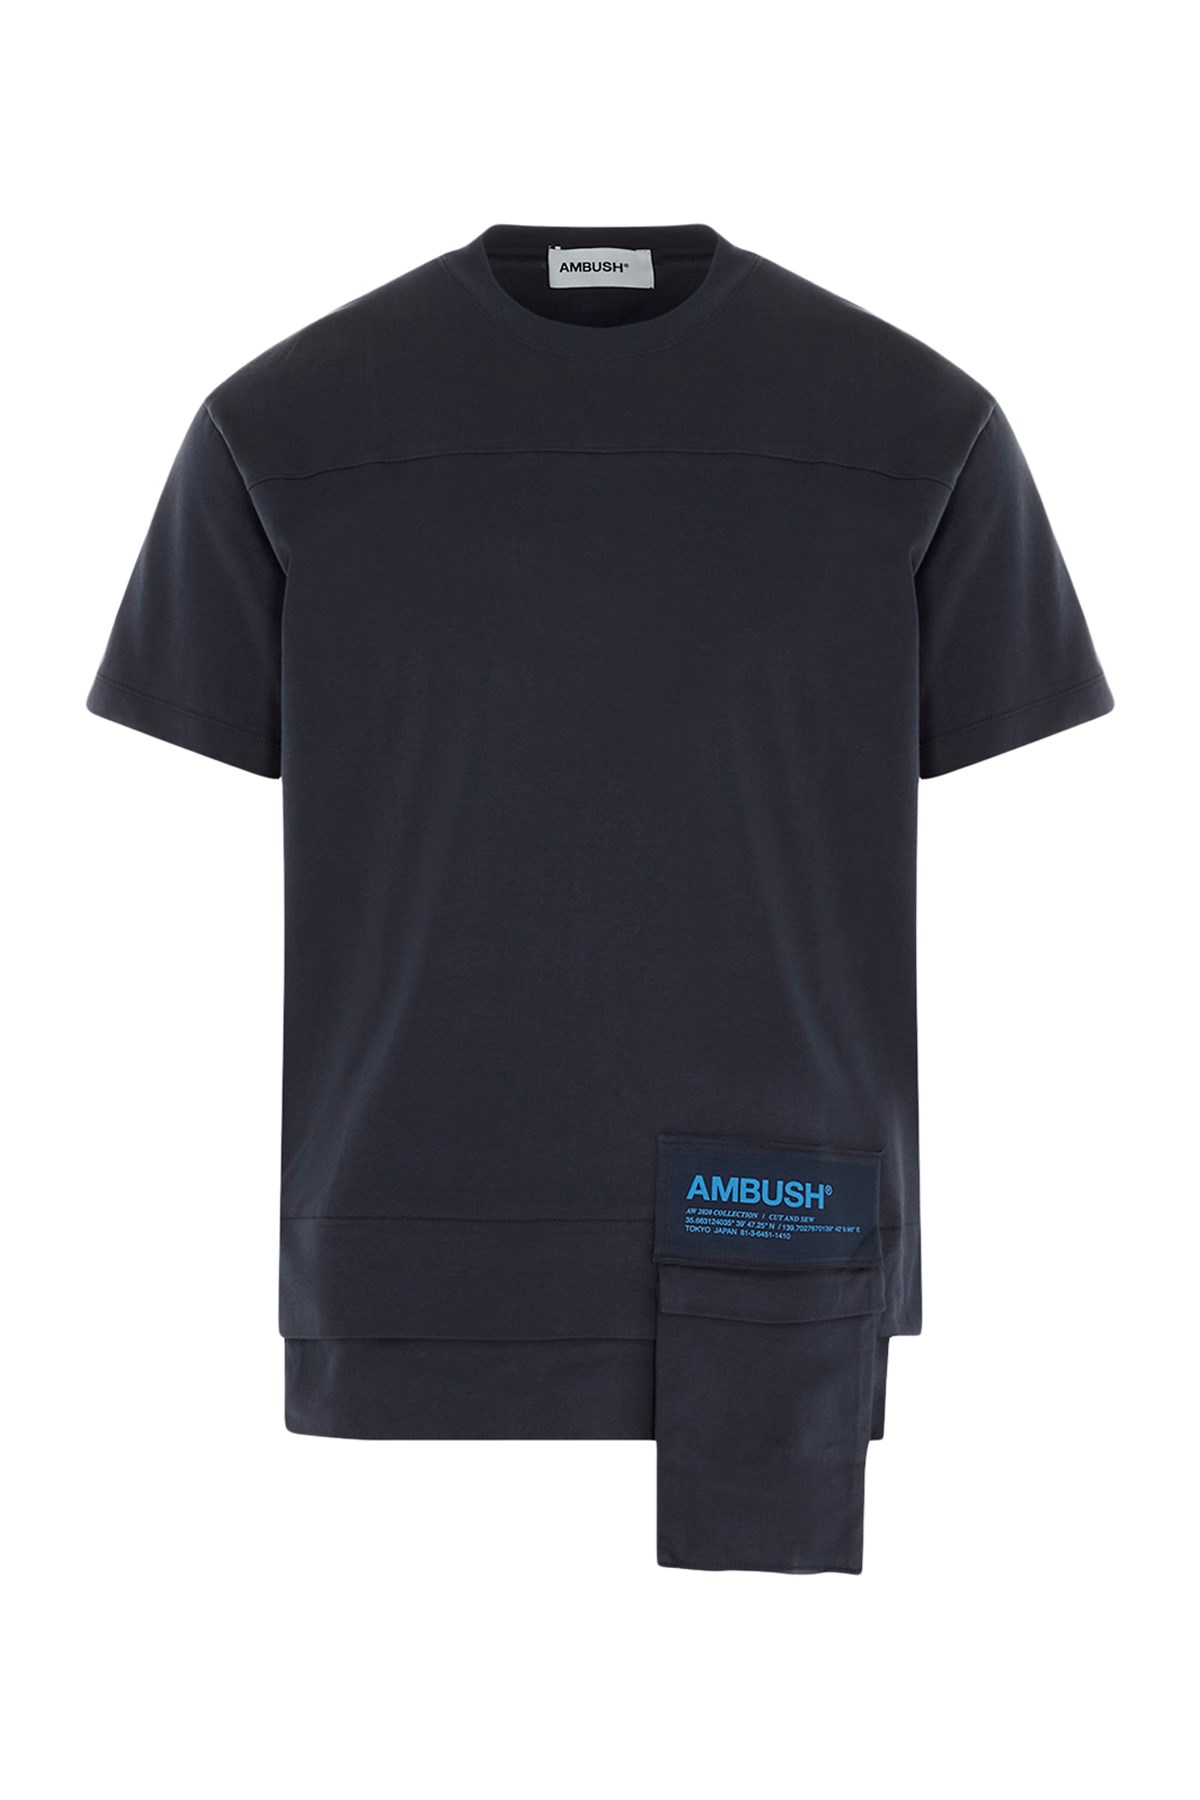 AMBUSH 'New Waist Pocket' T-Shirt